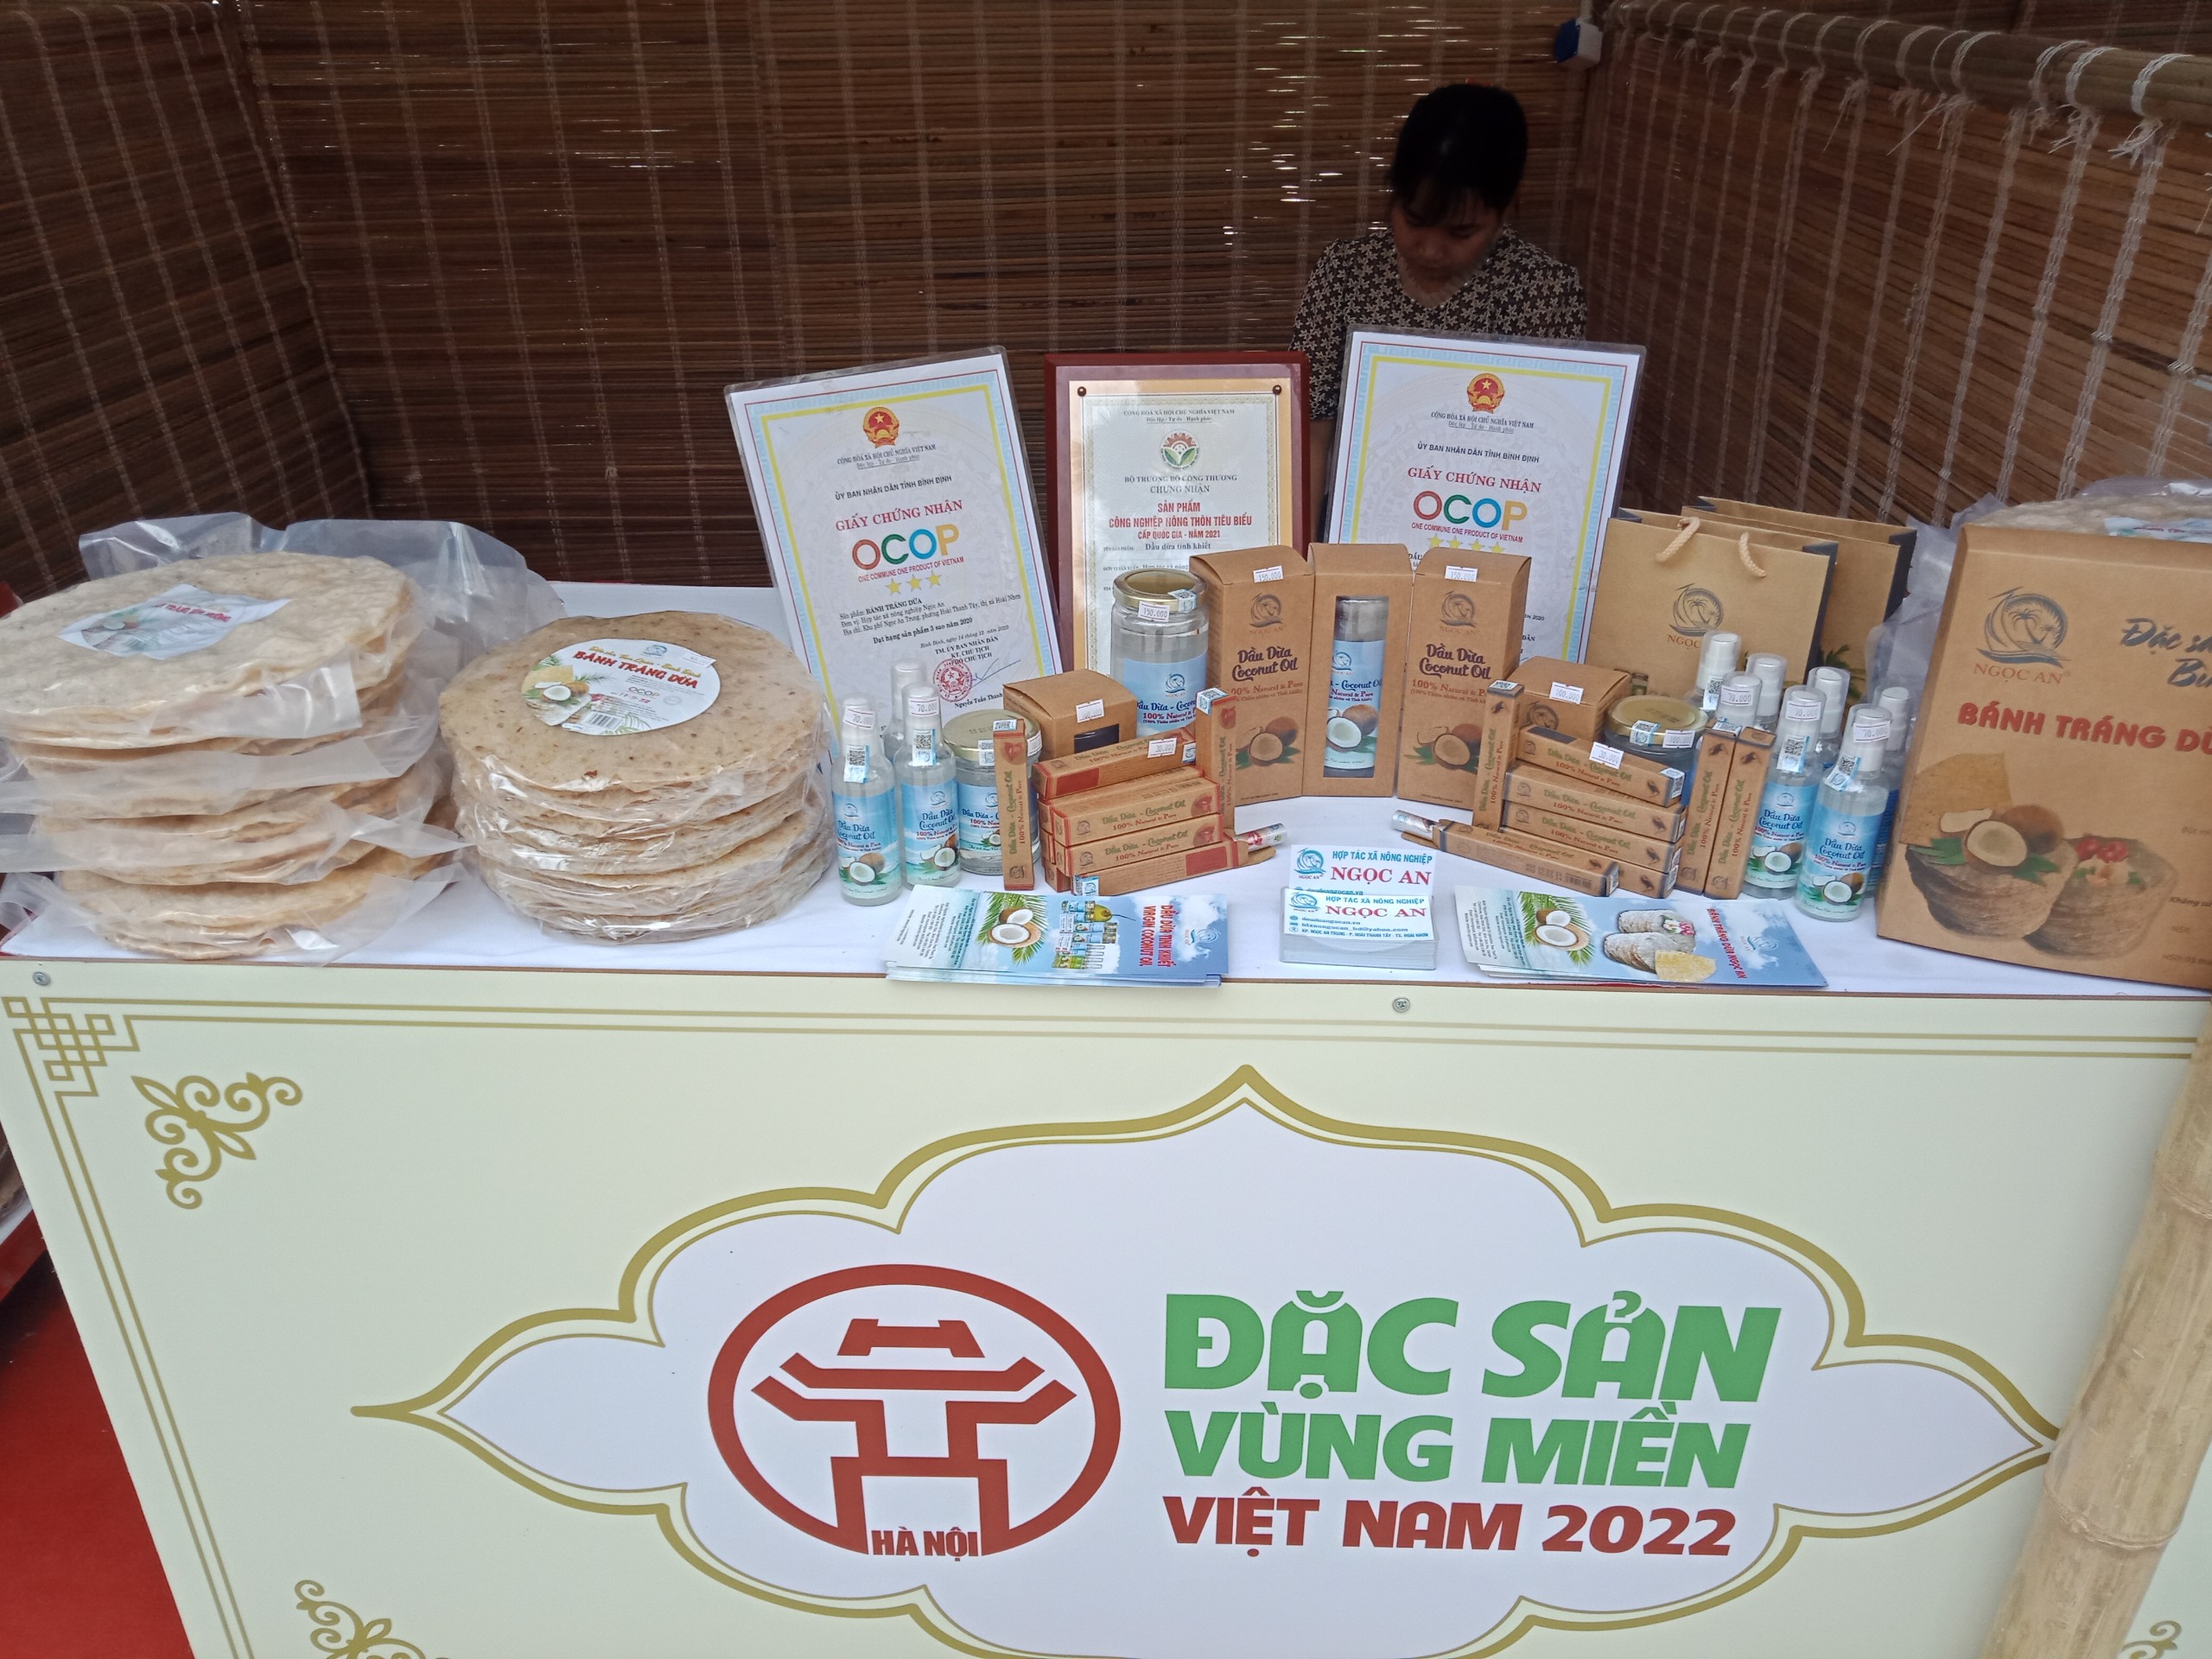  Sản phẩm dầu dừa, bánh tráng dừa Ngọc An tham gia Hội chợ Đặc sản vùng miền năm 2022 được tổ chức tại Quảng trường Trung tâm thương mại Vincom Mege Mall Royal City Hà Nội   